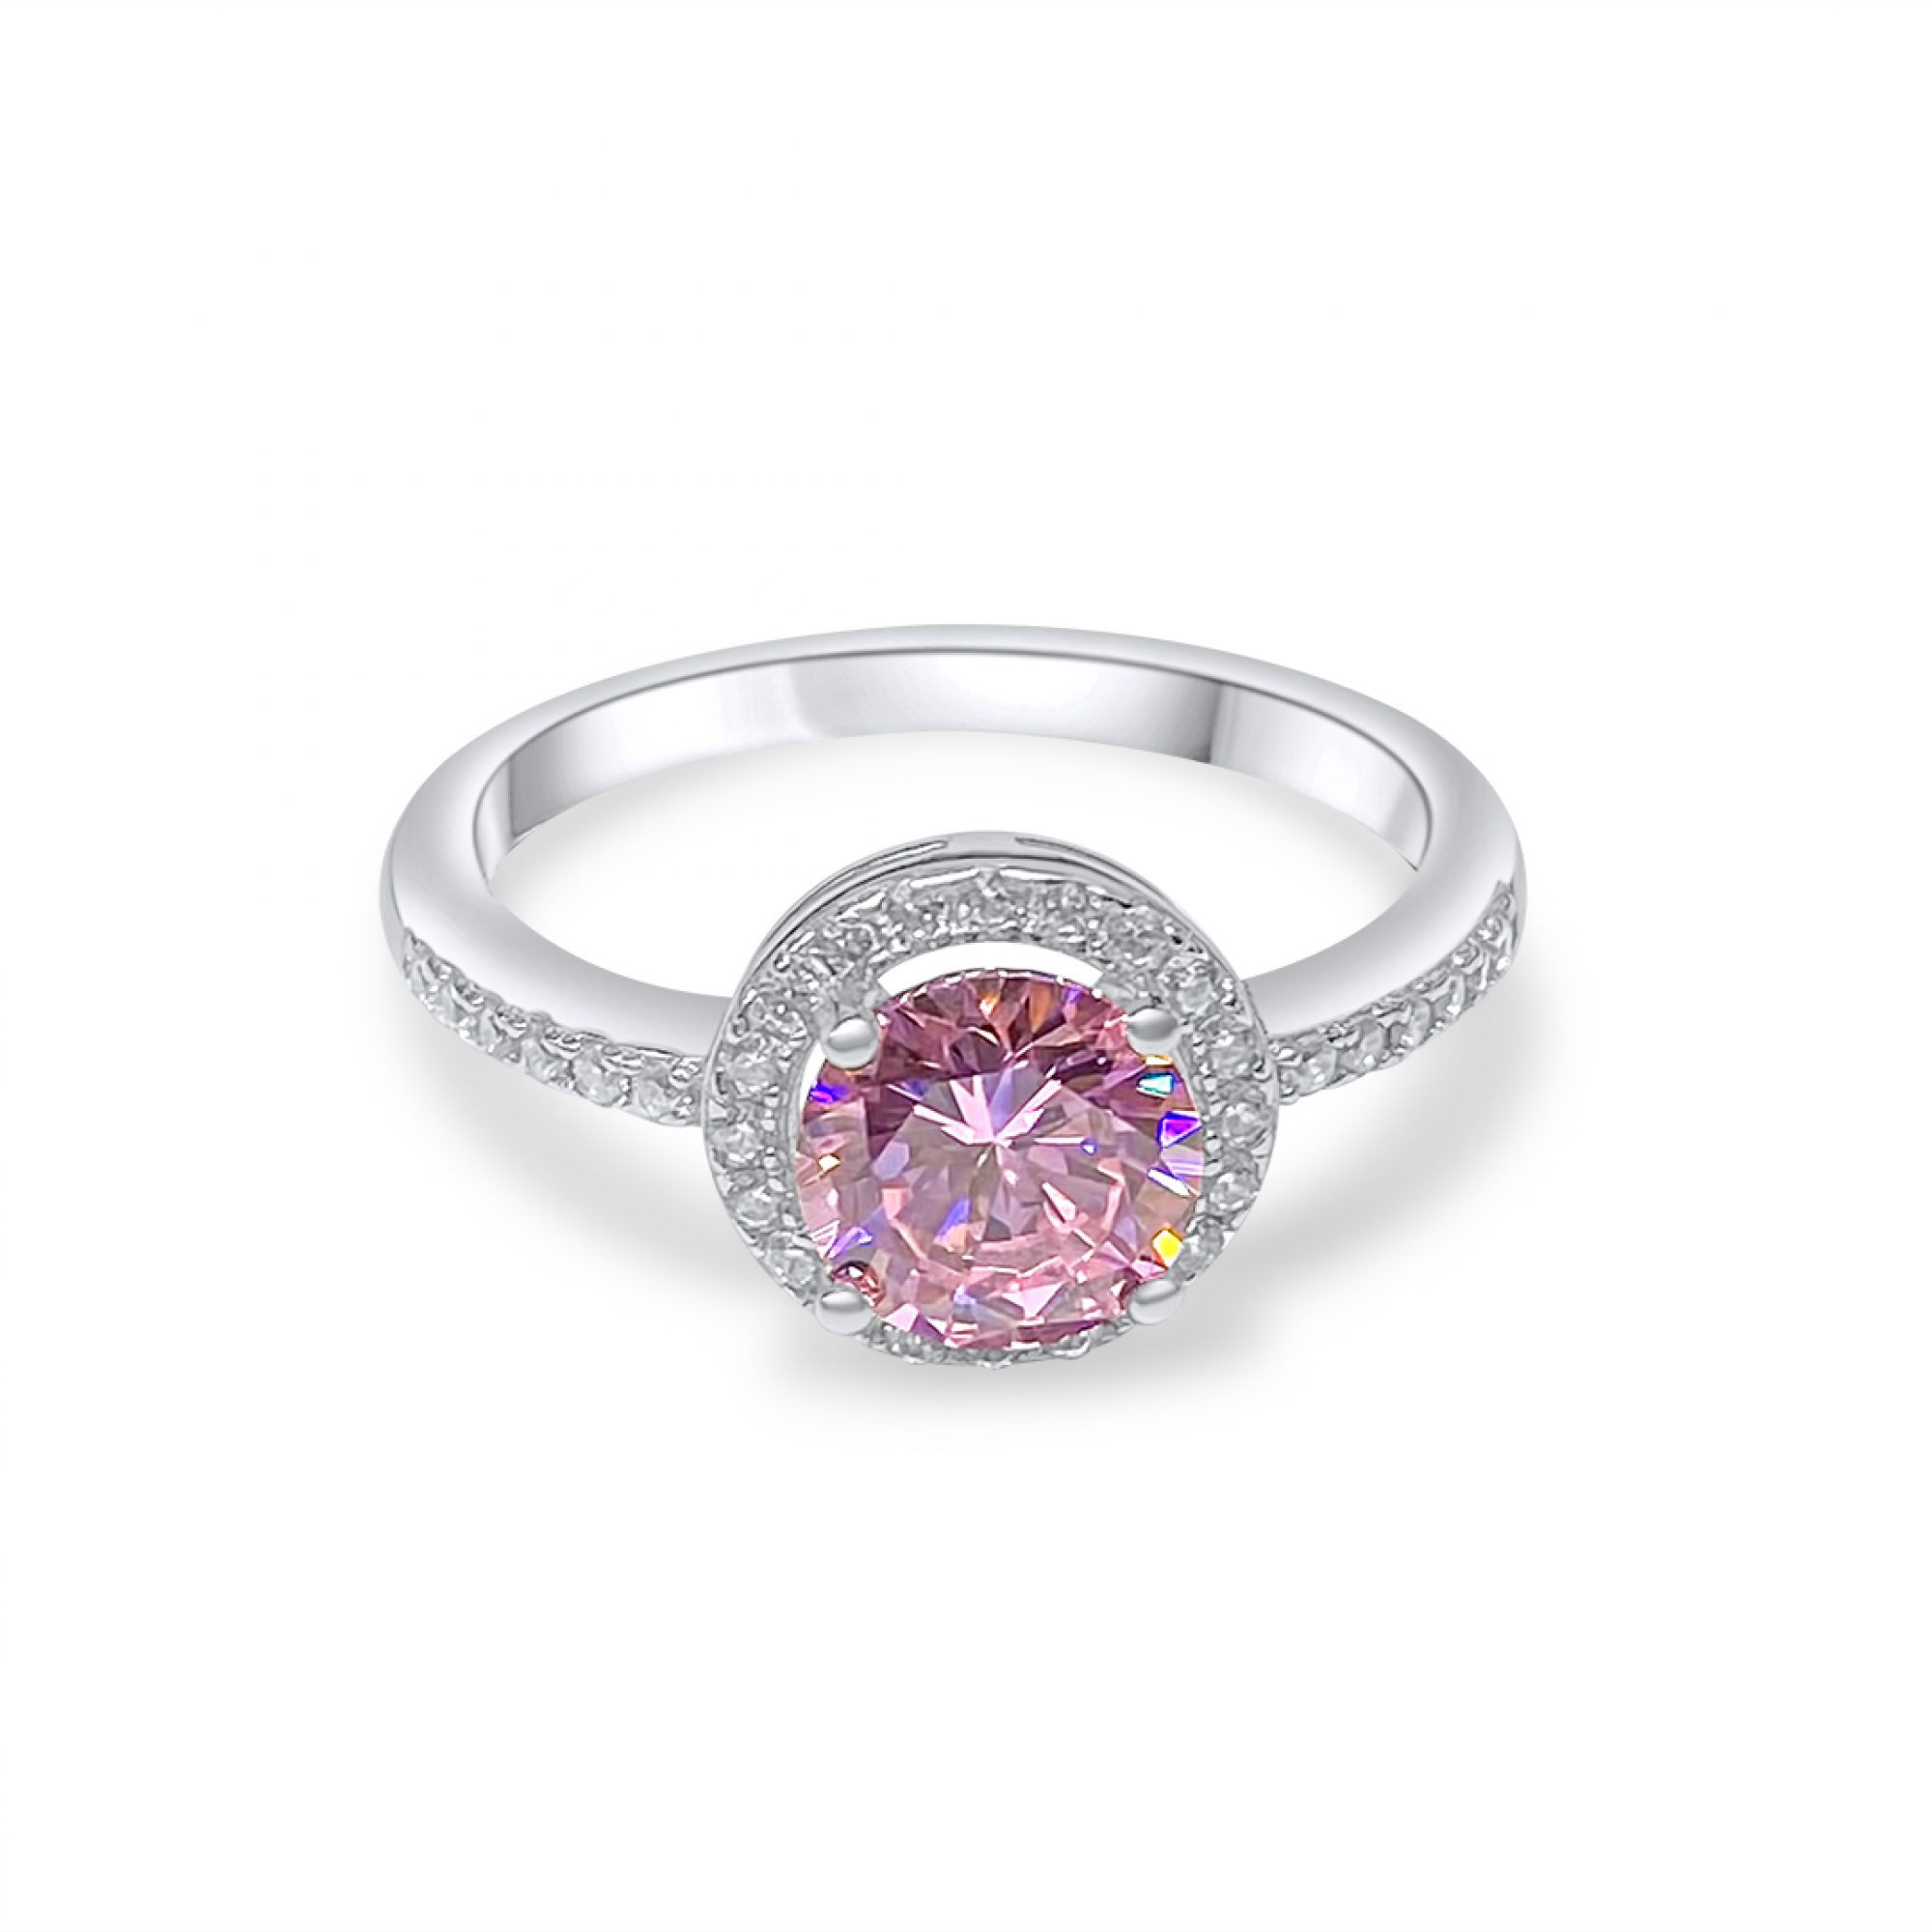 Δαχτυλίδι με πέτρες ζιργκόν και ροζ κουάρτζ